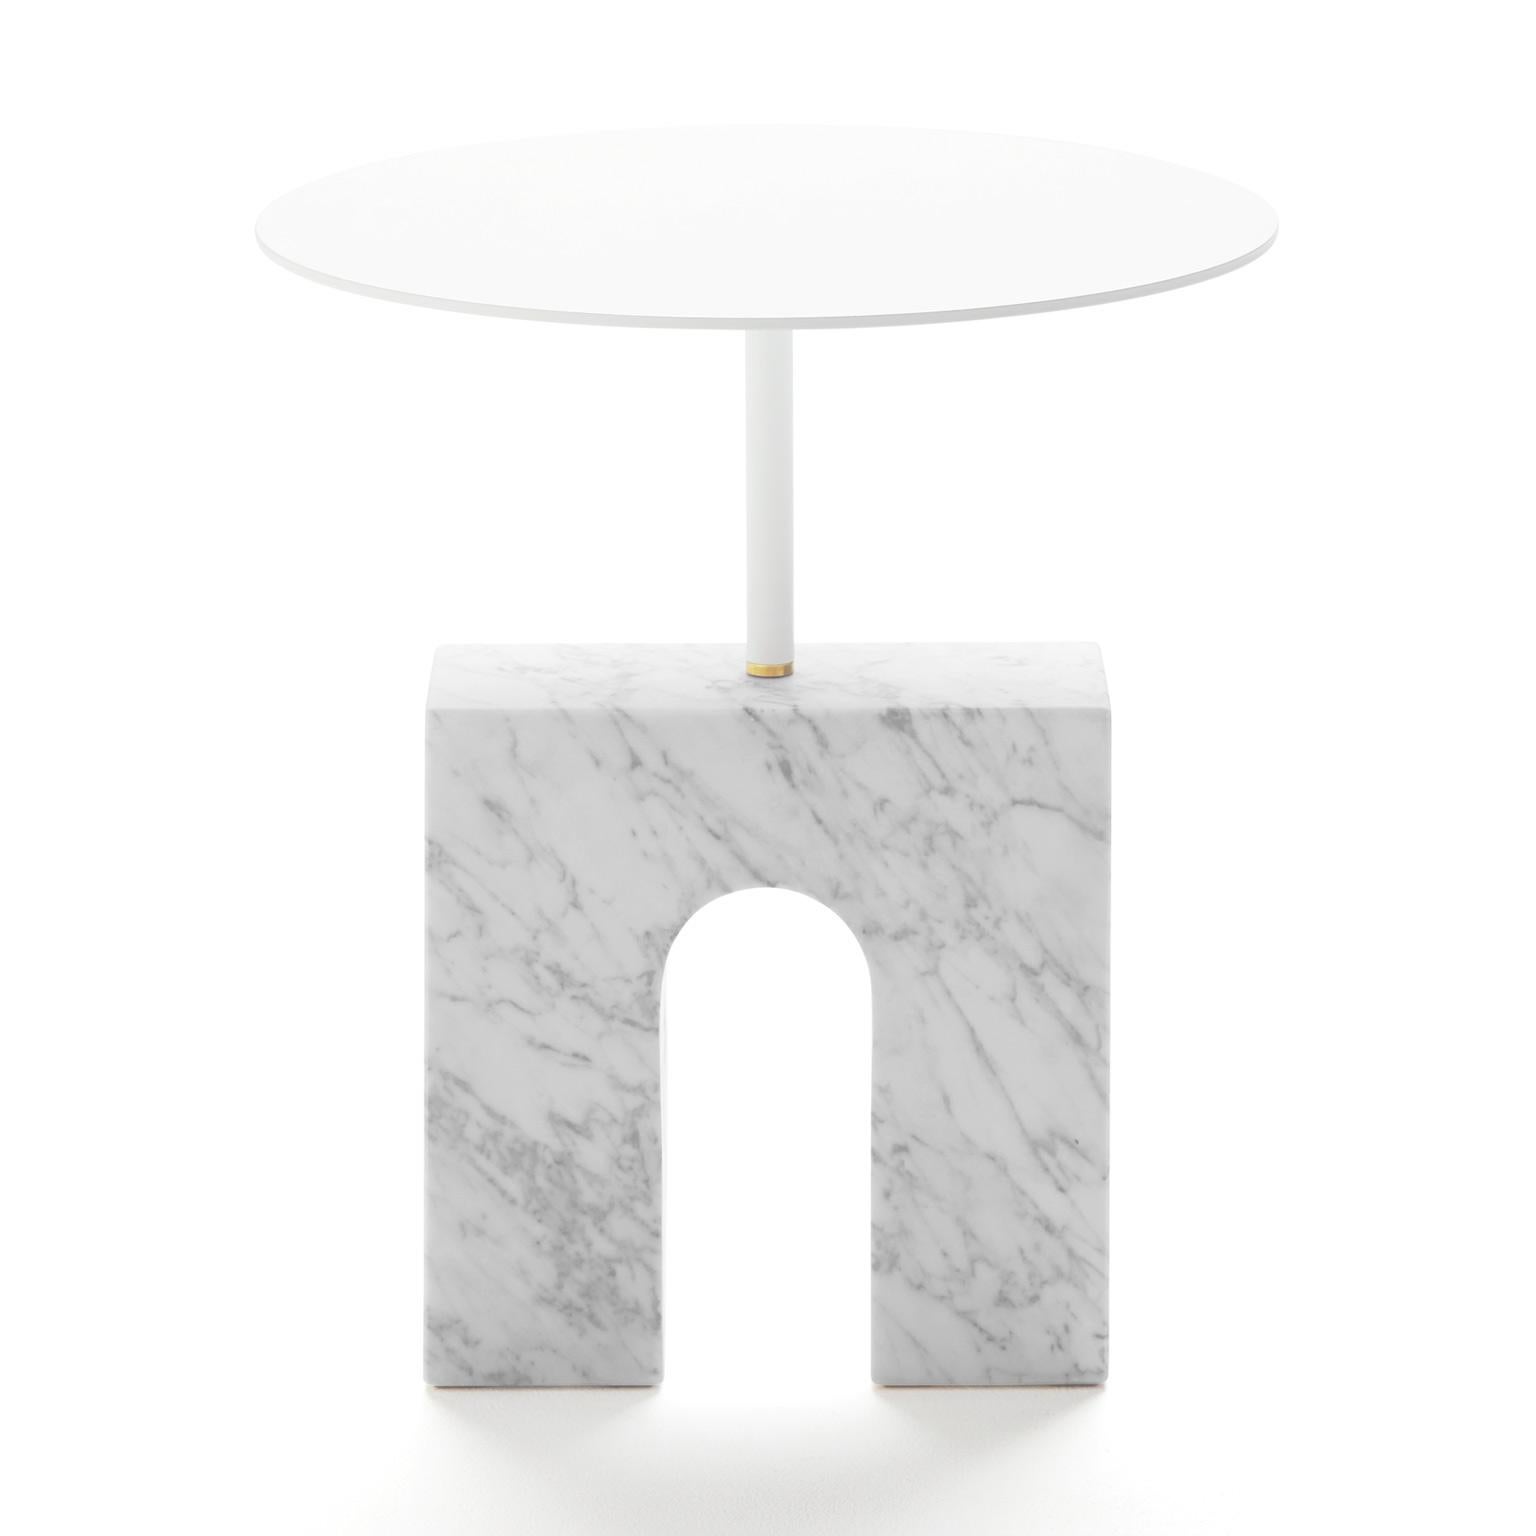 Der Triumph Beistelltisch ist ein minimalistischer Beistelltisch, der aus einem Sockel aus behandeltem Carrara-Marmor, einer runden Platte aus weiß lackiertem Aluminium und einem kleinen Messingstück besteht, das als Bindeglied zwischen den beiden